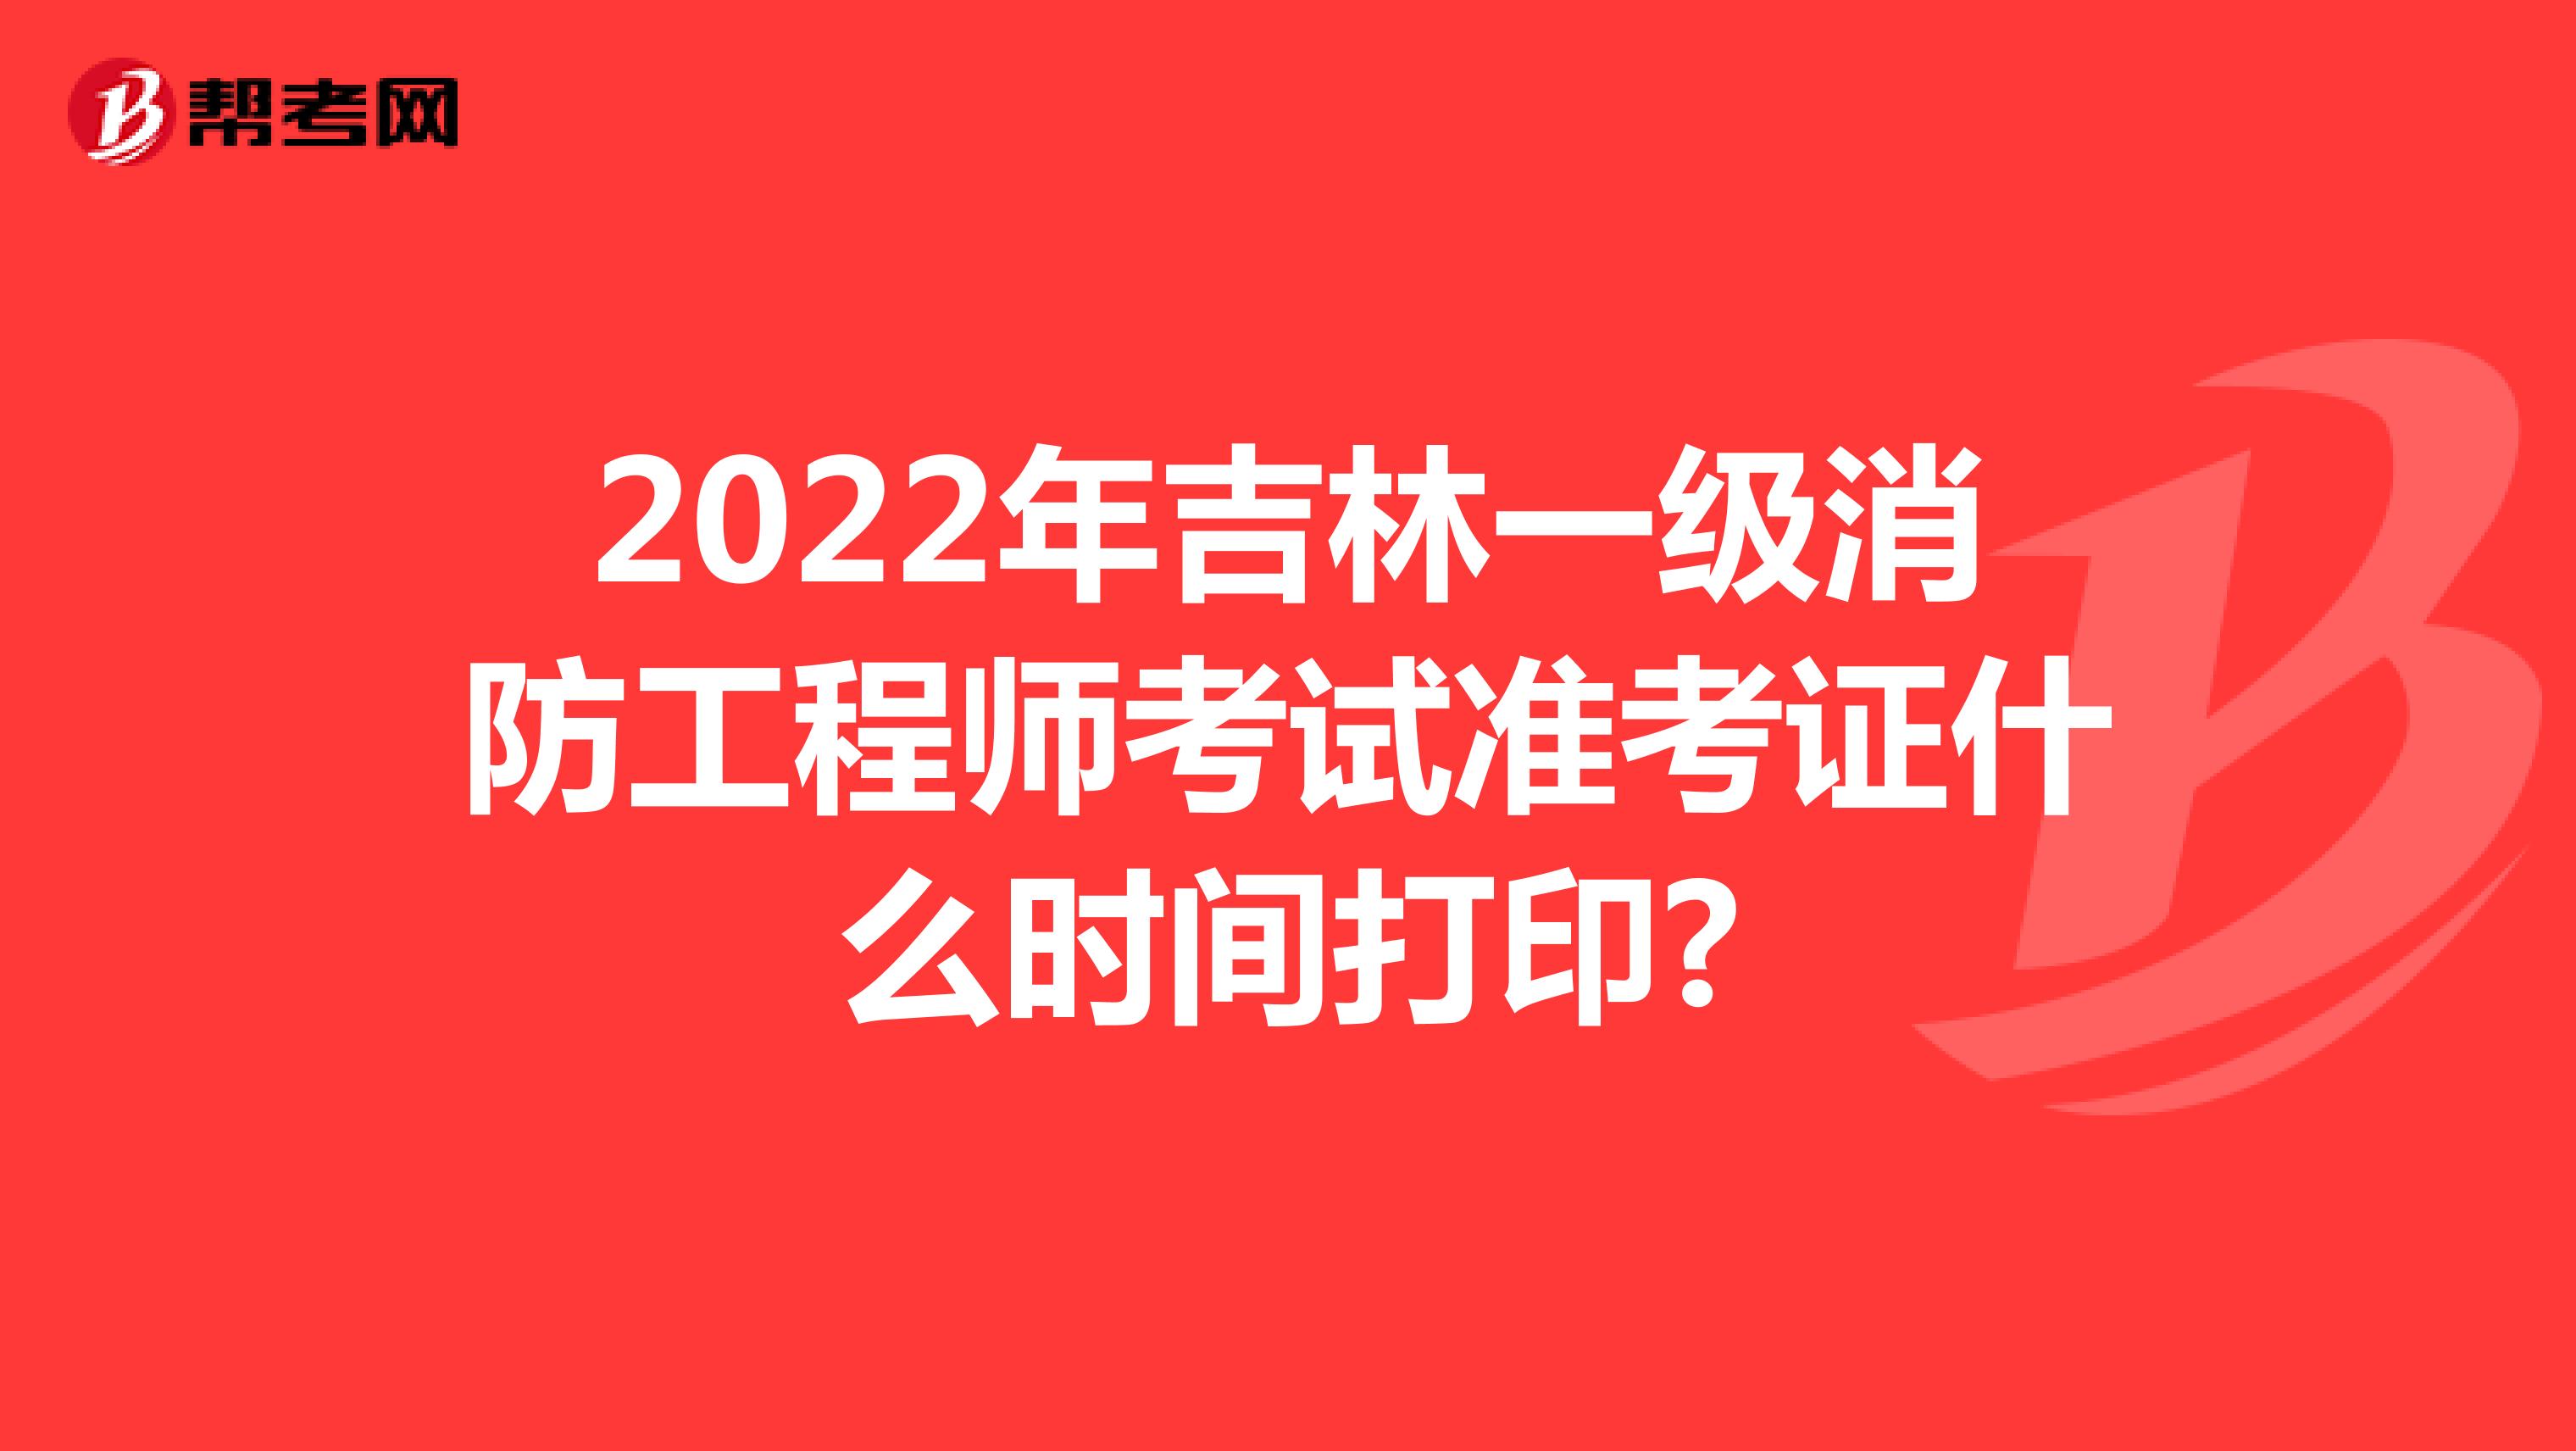 2022年吉林一级消防工程师考试准考证什么时间打印?